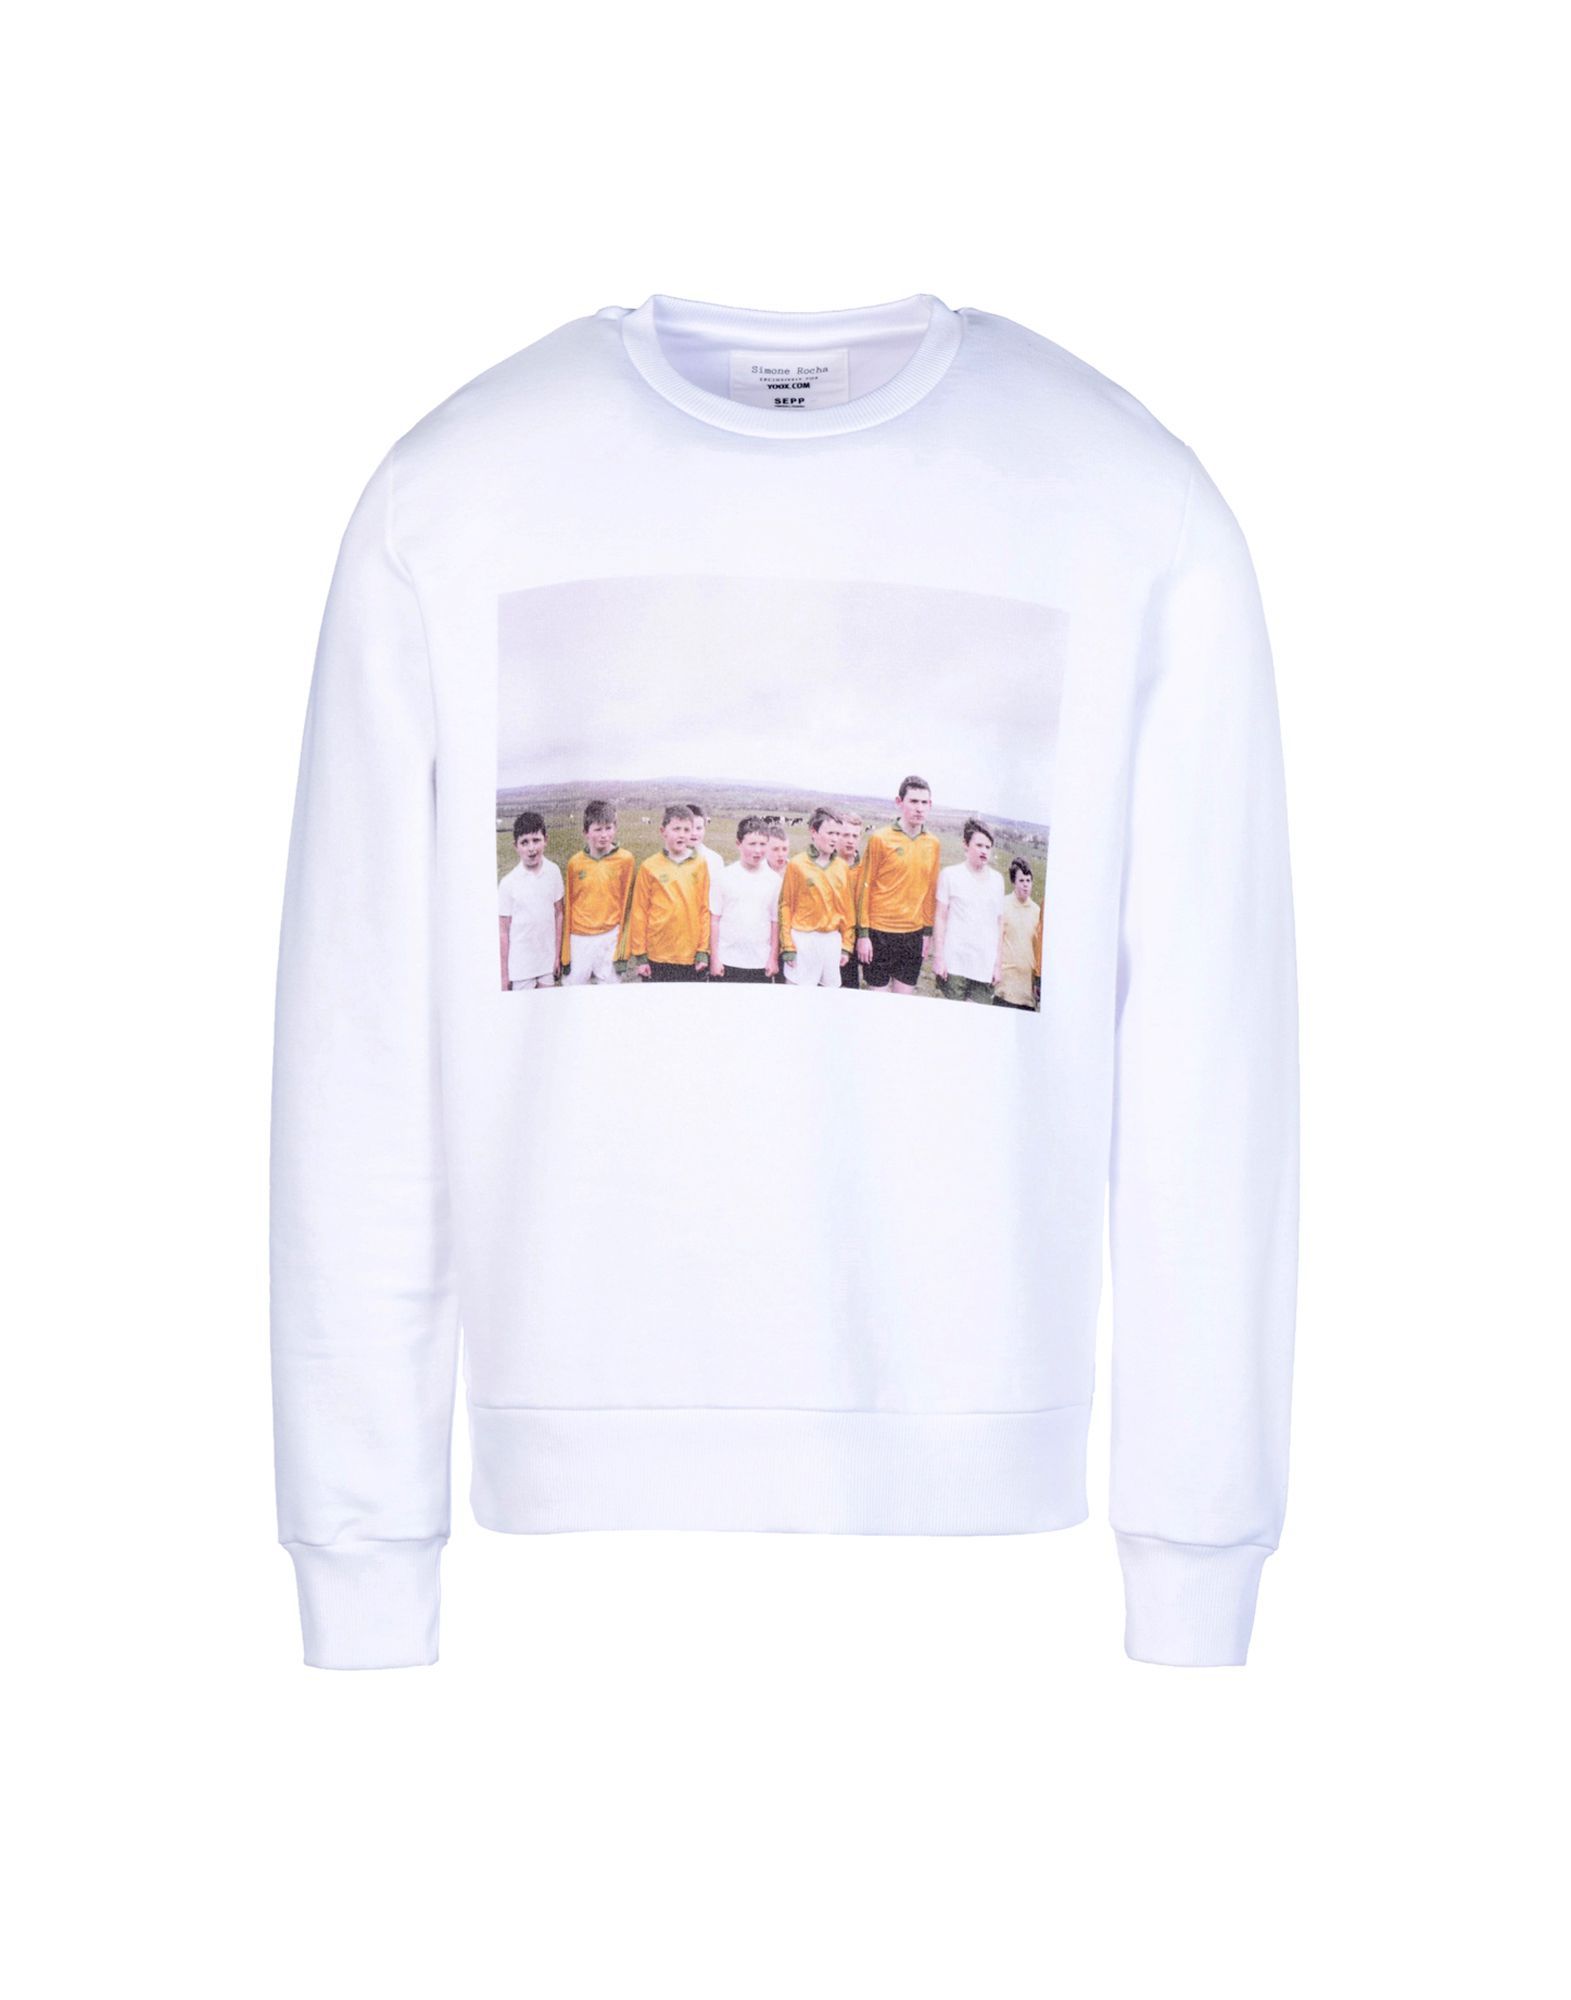 SIMONE ROCHA EXCLUSIVELY FOR YOOX Sweatshirts | YOOX (US)